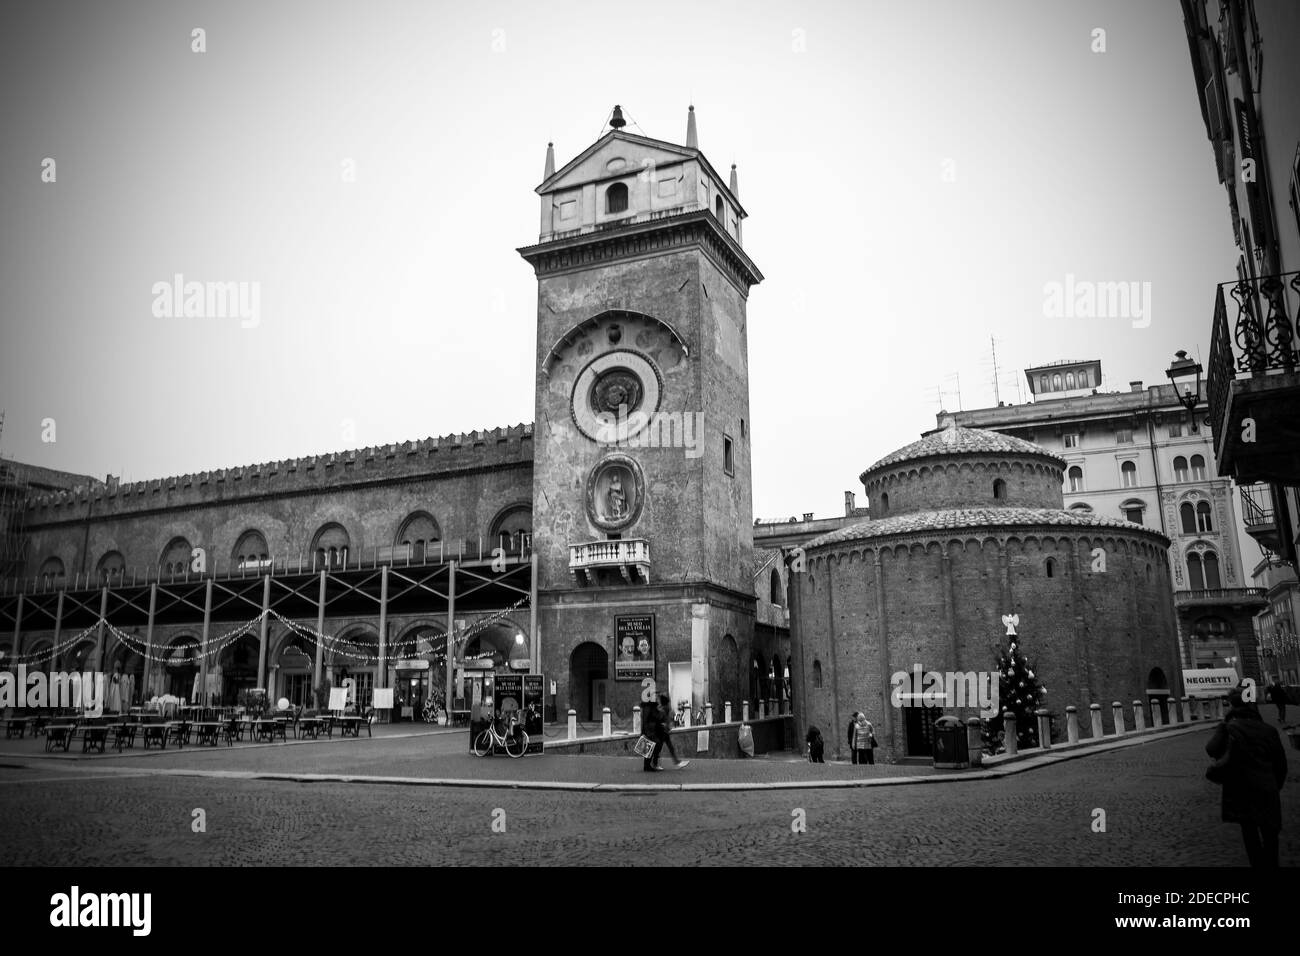 Mantua, Lombardei, Italien, Dezember 2015: Der Uhrturm und die Kirche der Rotonda San Lorenzo in Piazza delle Erbe, während der Weihnachtszeit. Schwarzweiß-Fotografie. Stockfoto